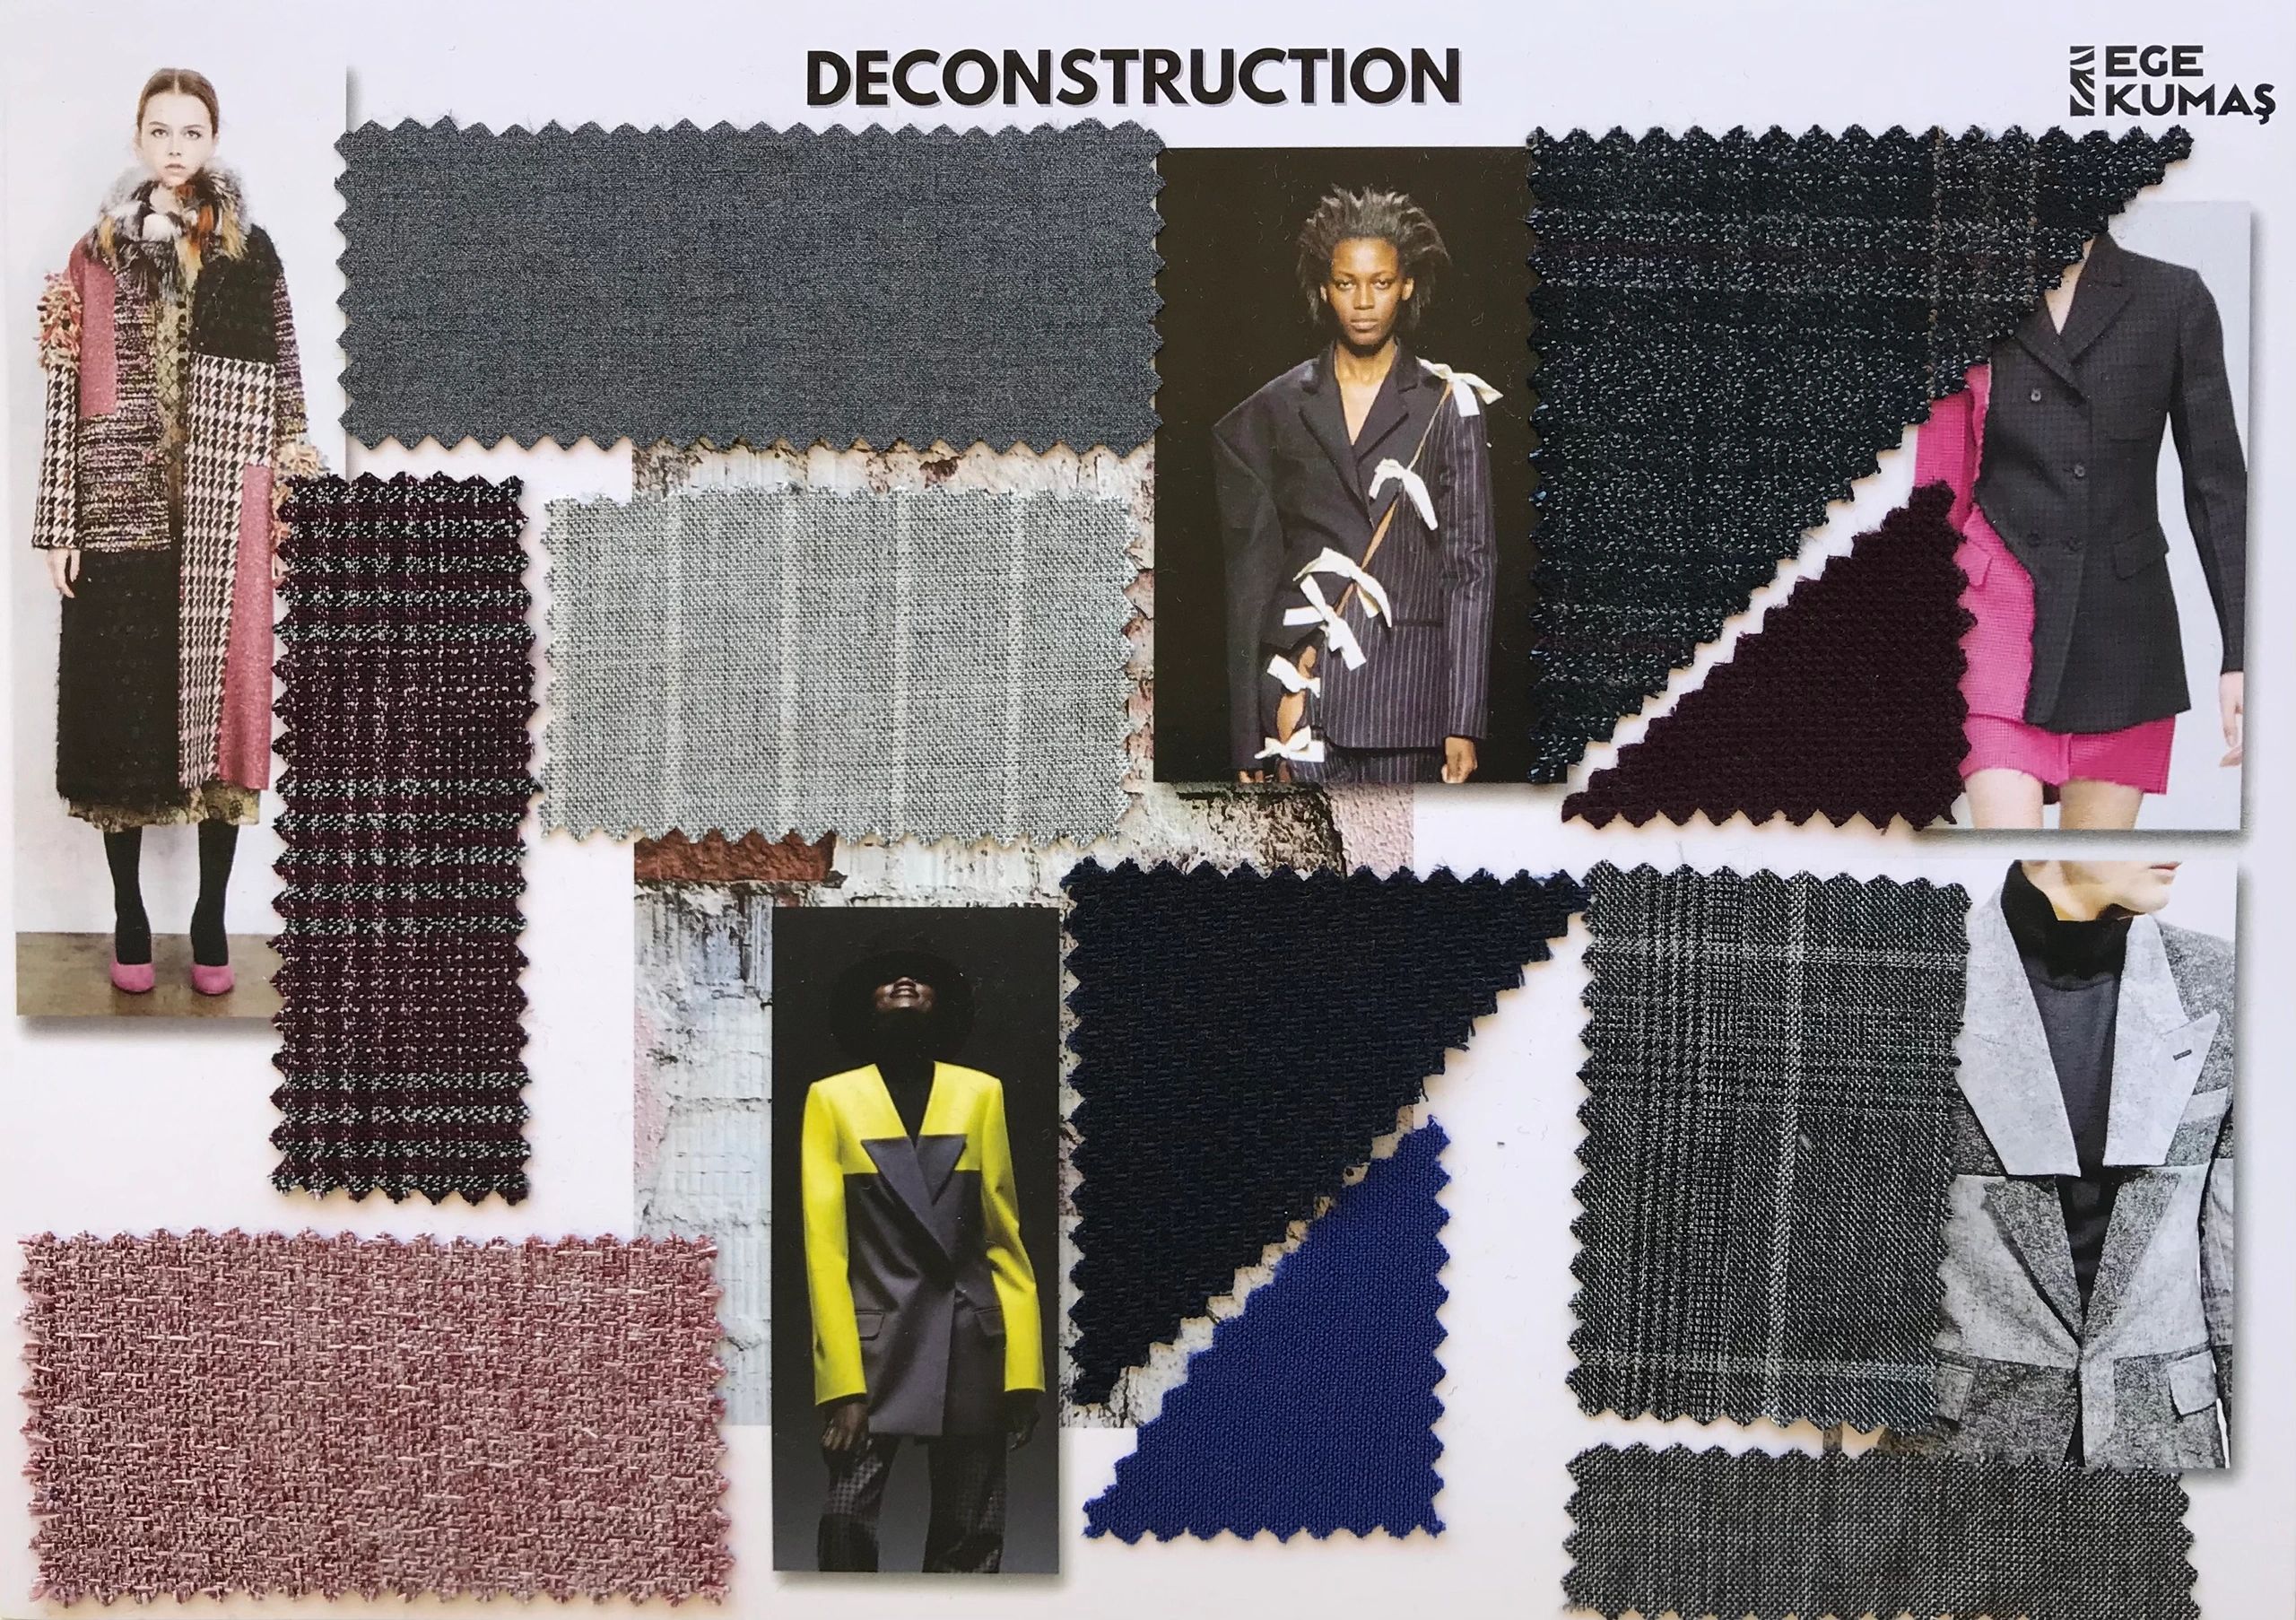 kumaş tekstil moda ilham panosu tasarımı hazırlanması yapılması
fabric textile moodboard
katalog